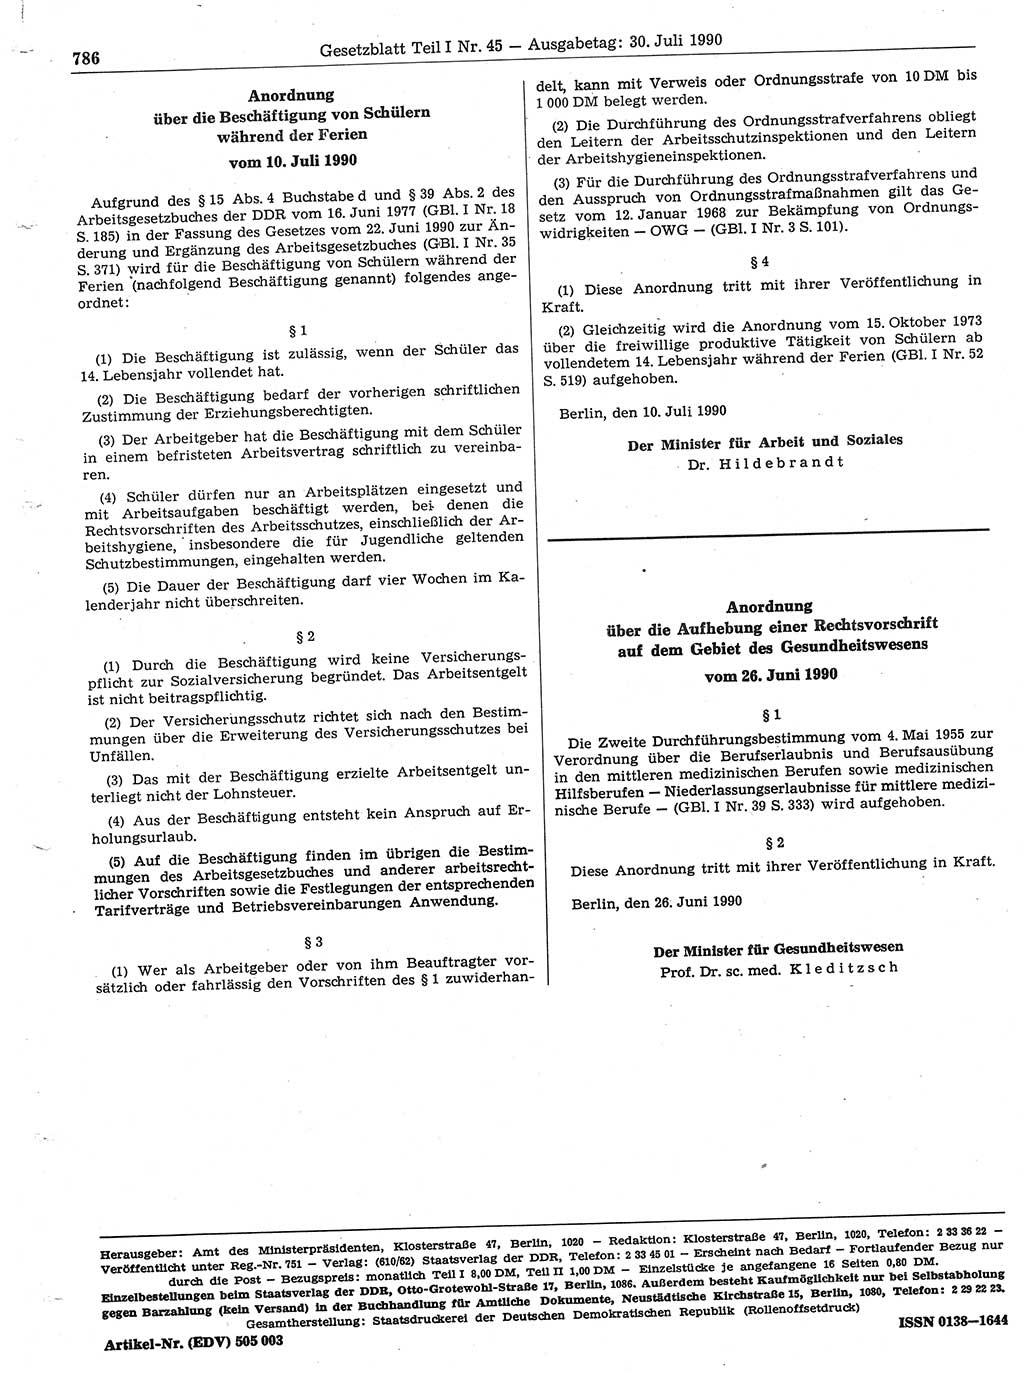 Gesetzblatt (GBl.) der Deutschen Demokratischen Republik (DDR) Teil Ⅰ 1990, Seite 786 (GBl. DDR Ⅰ 1990, S. 786)